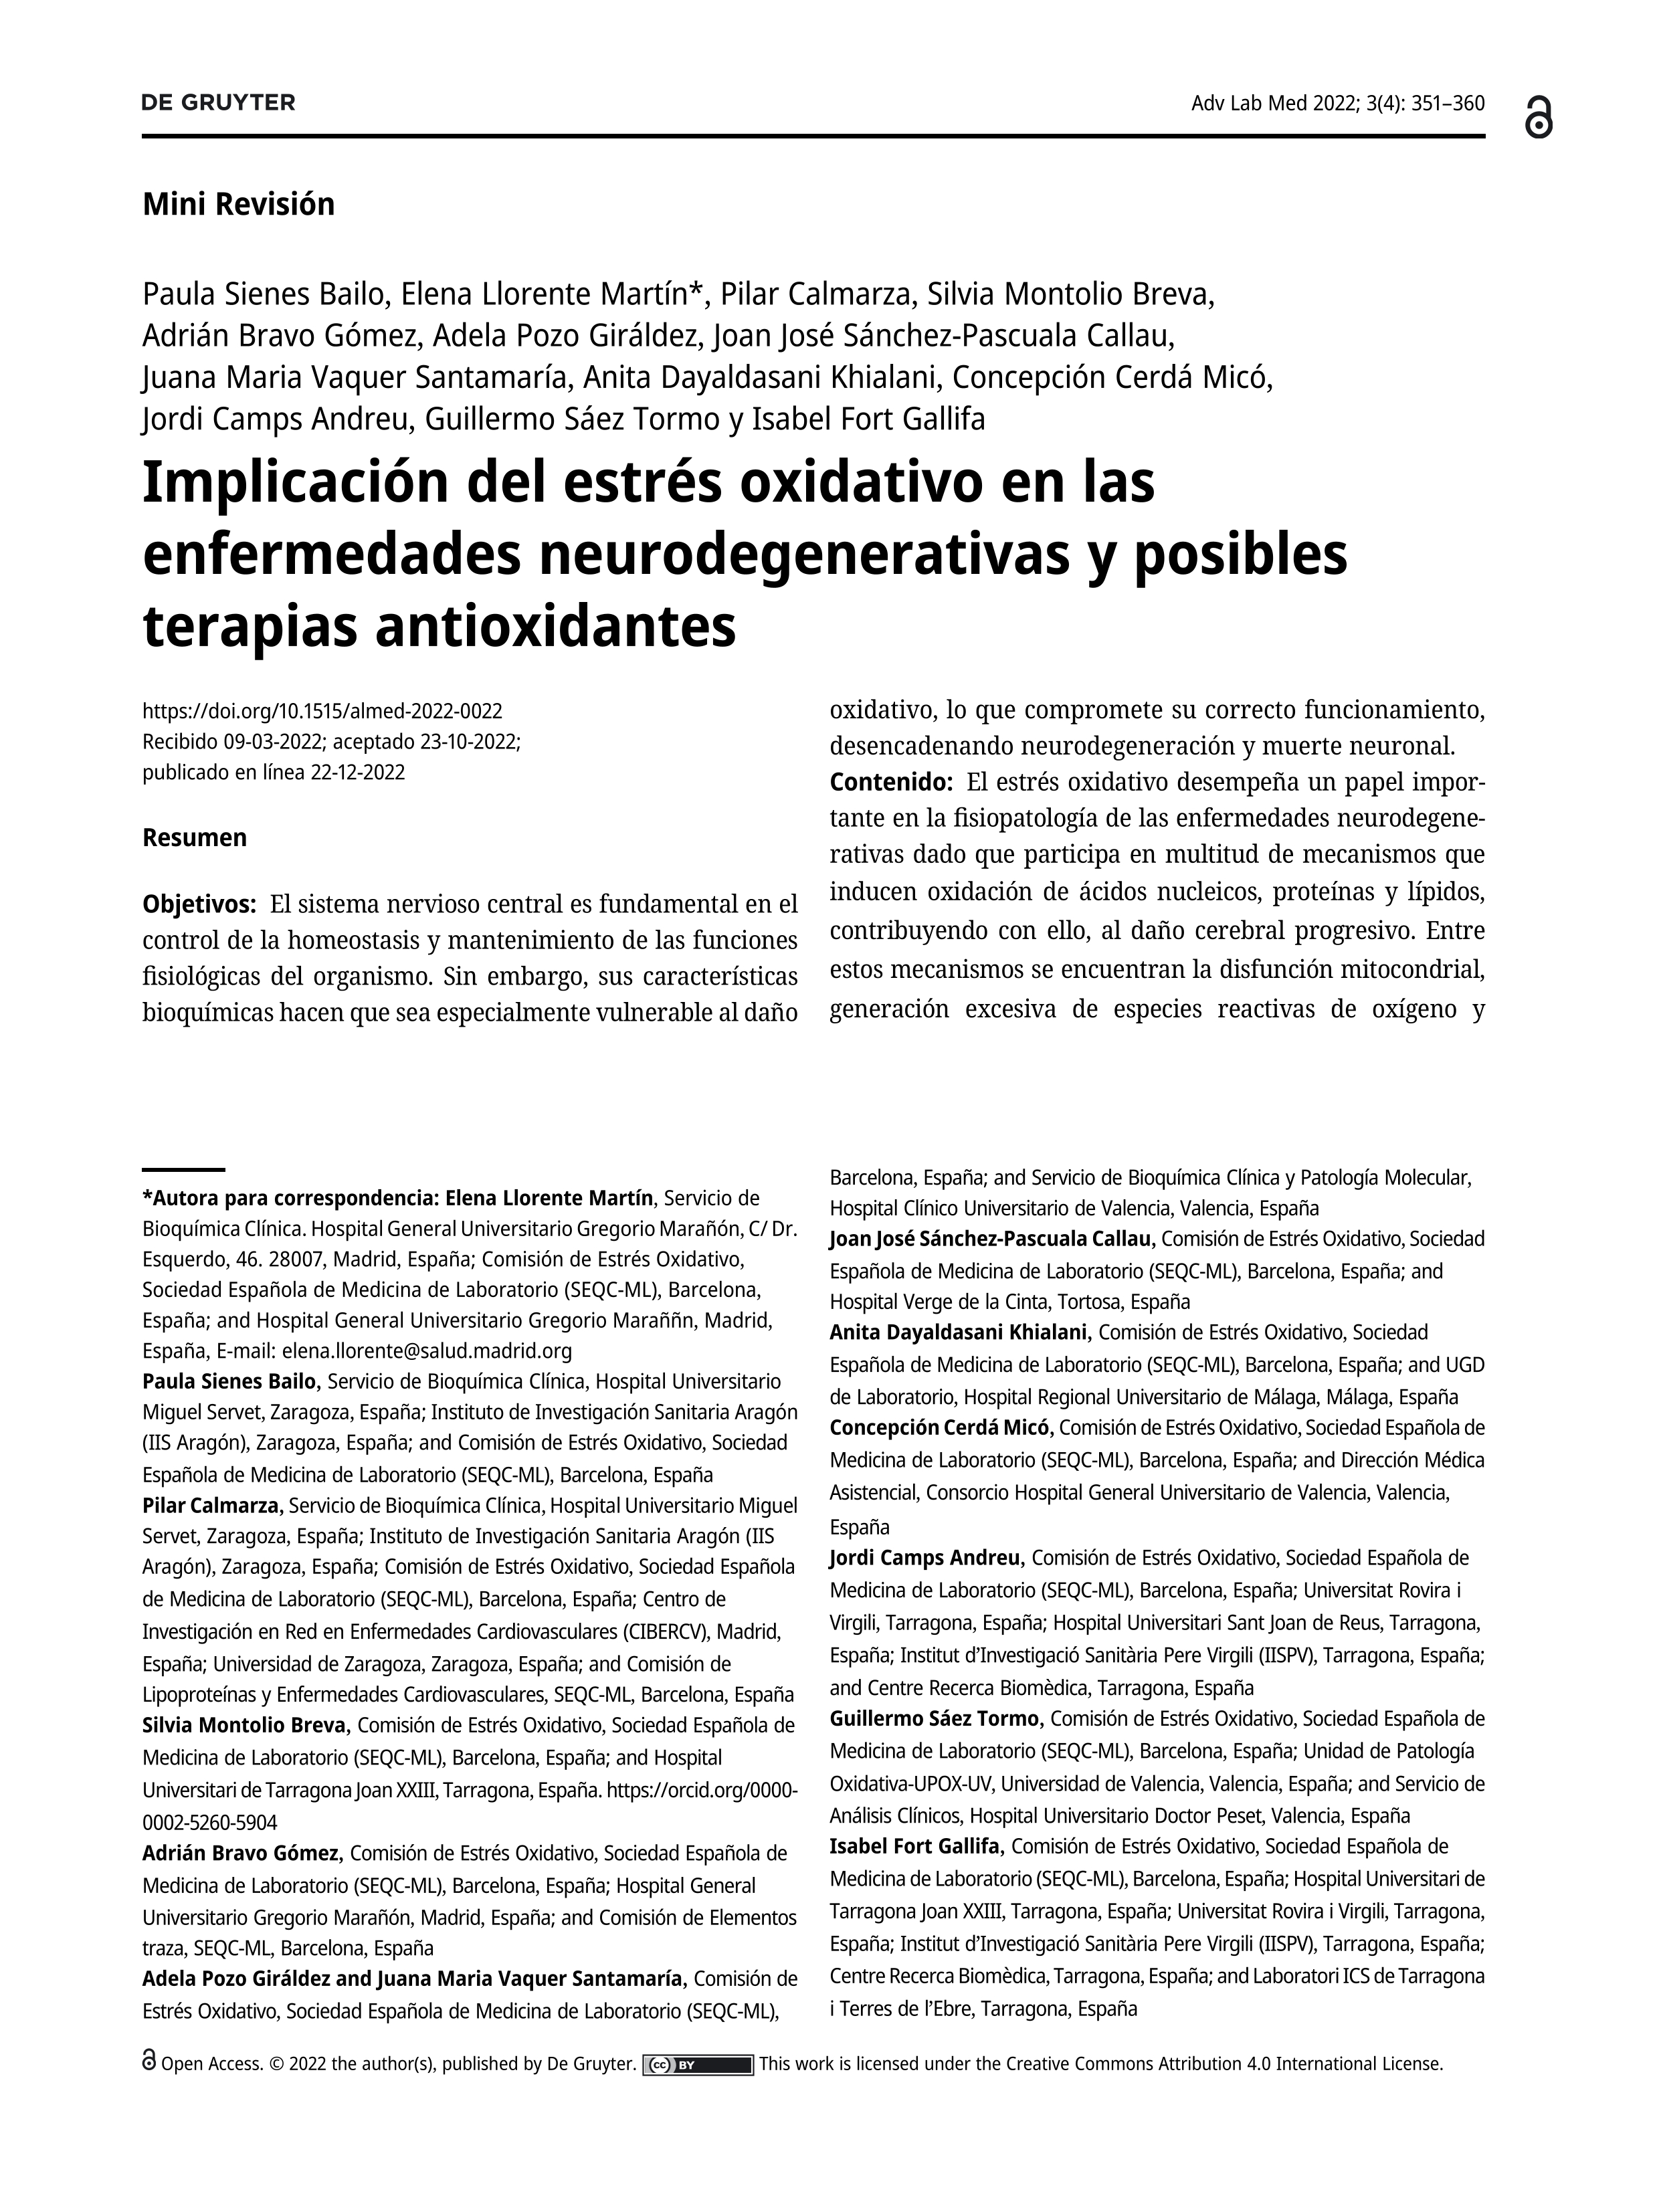 Implicación del estrés oxidativo en las enfermedades neurodegenerativas y posibles terapias antioxidantes